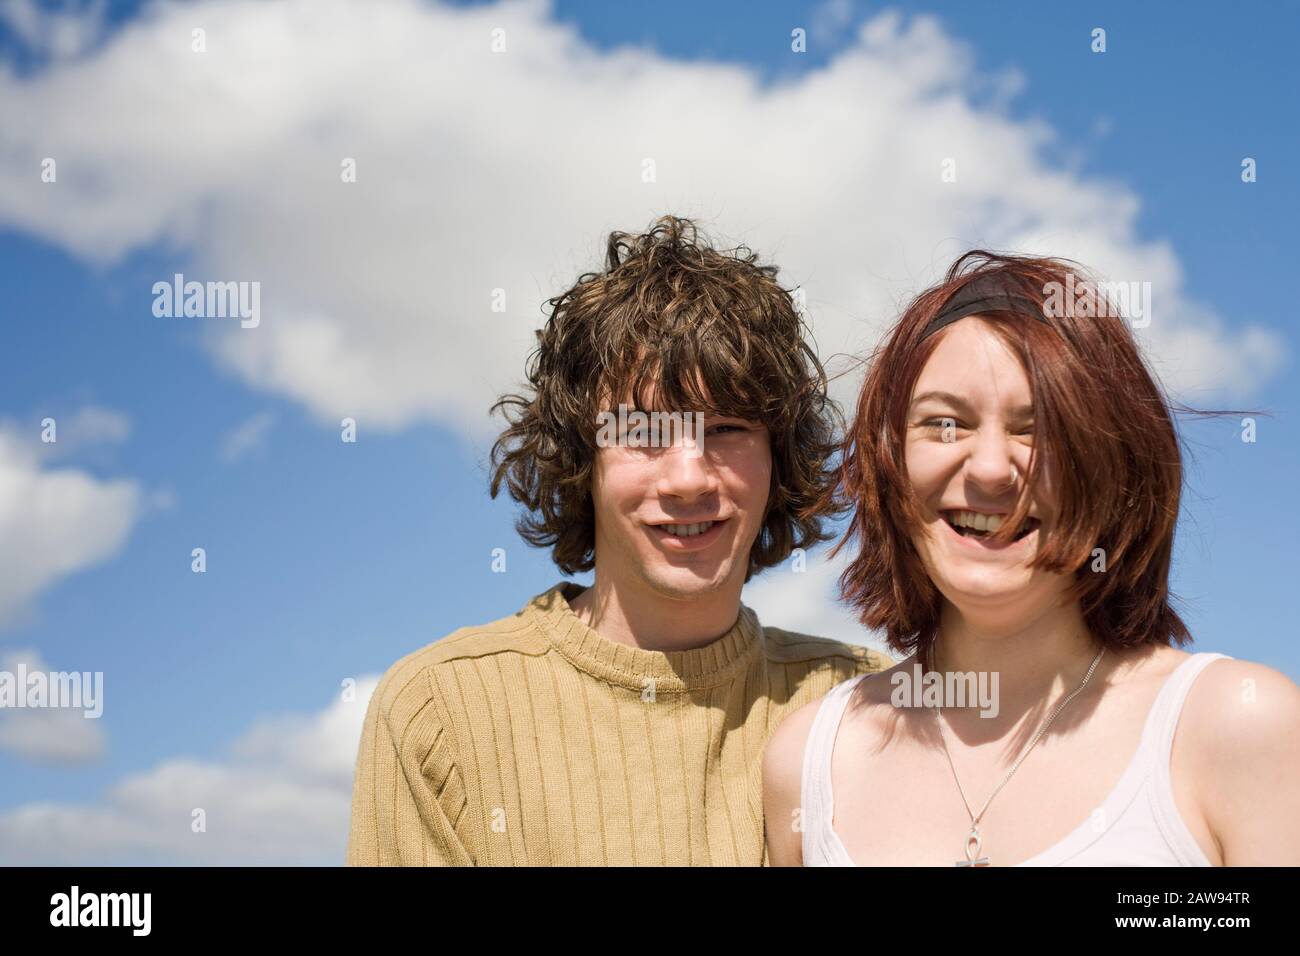 Una coppia adolescente che ride e sorride alla macchina fotografica all'aperto Foto Stock